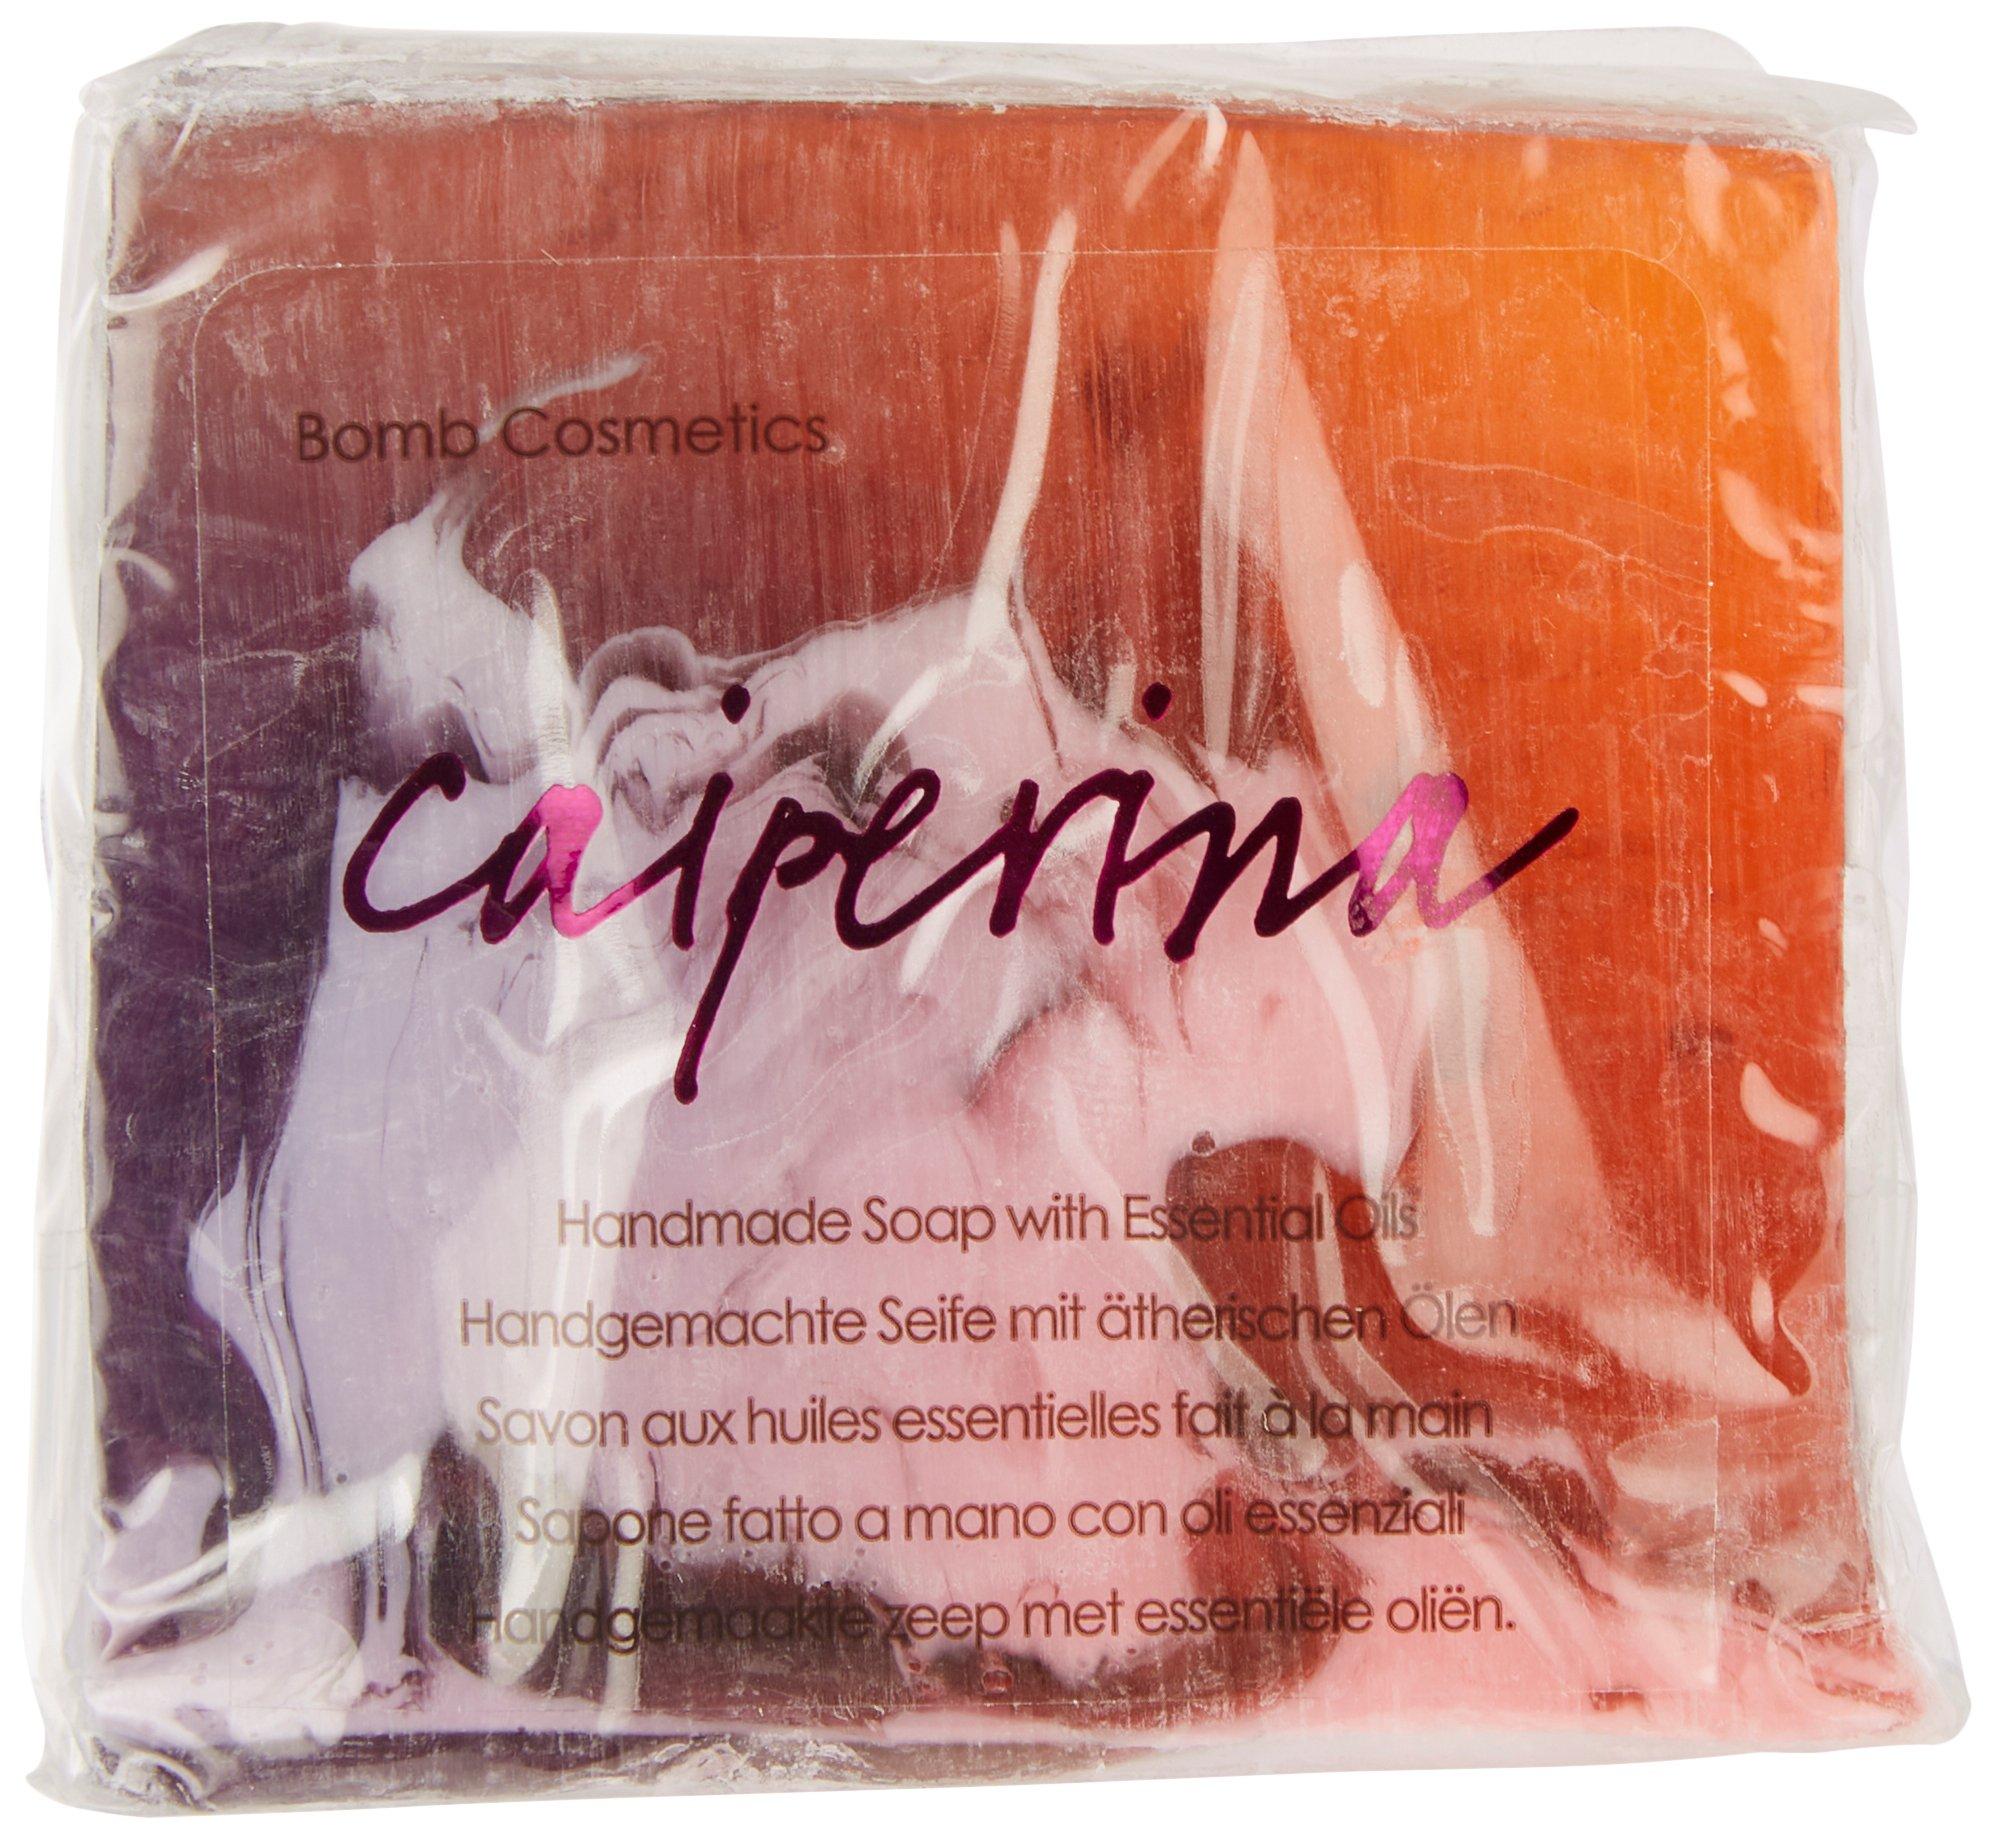 Bomb Cosmetics Caiperina Handmade Soap